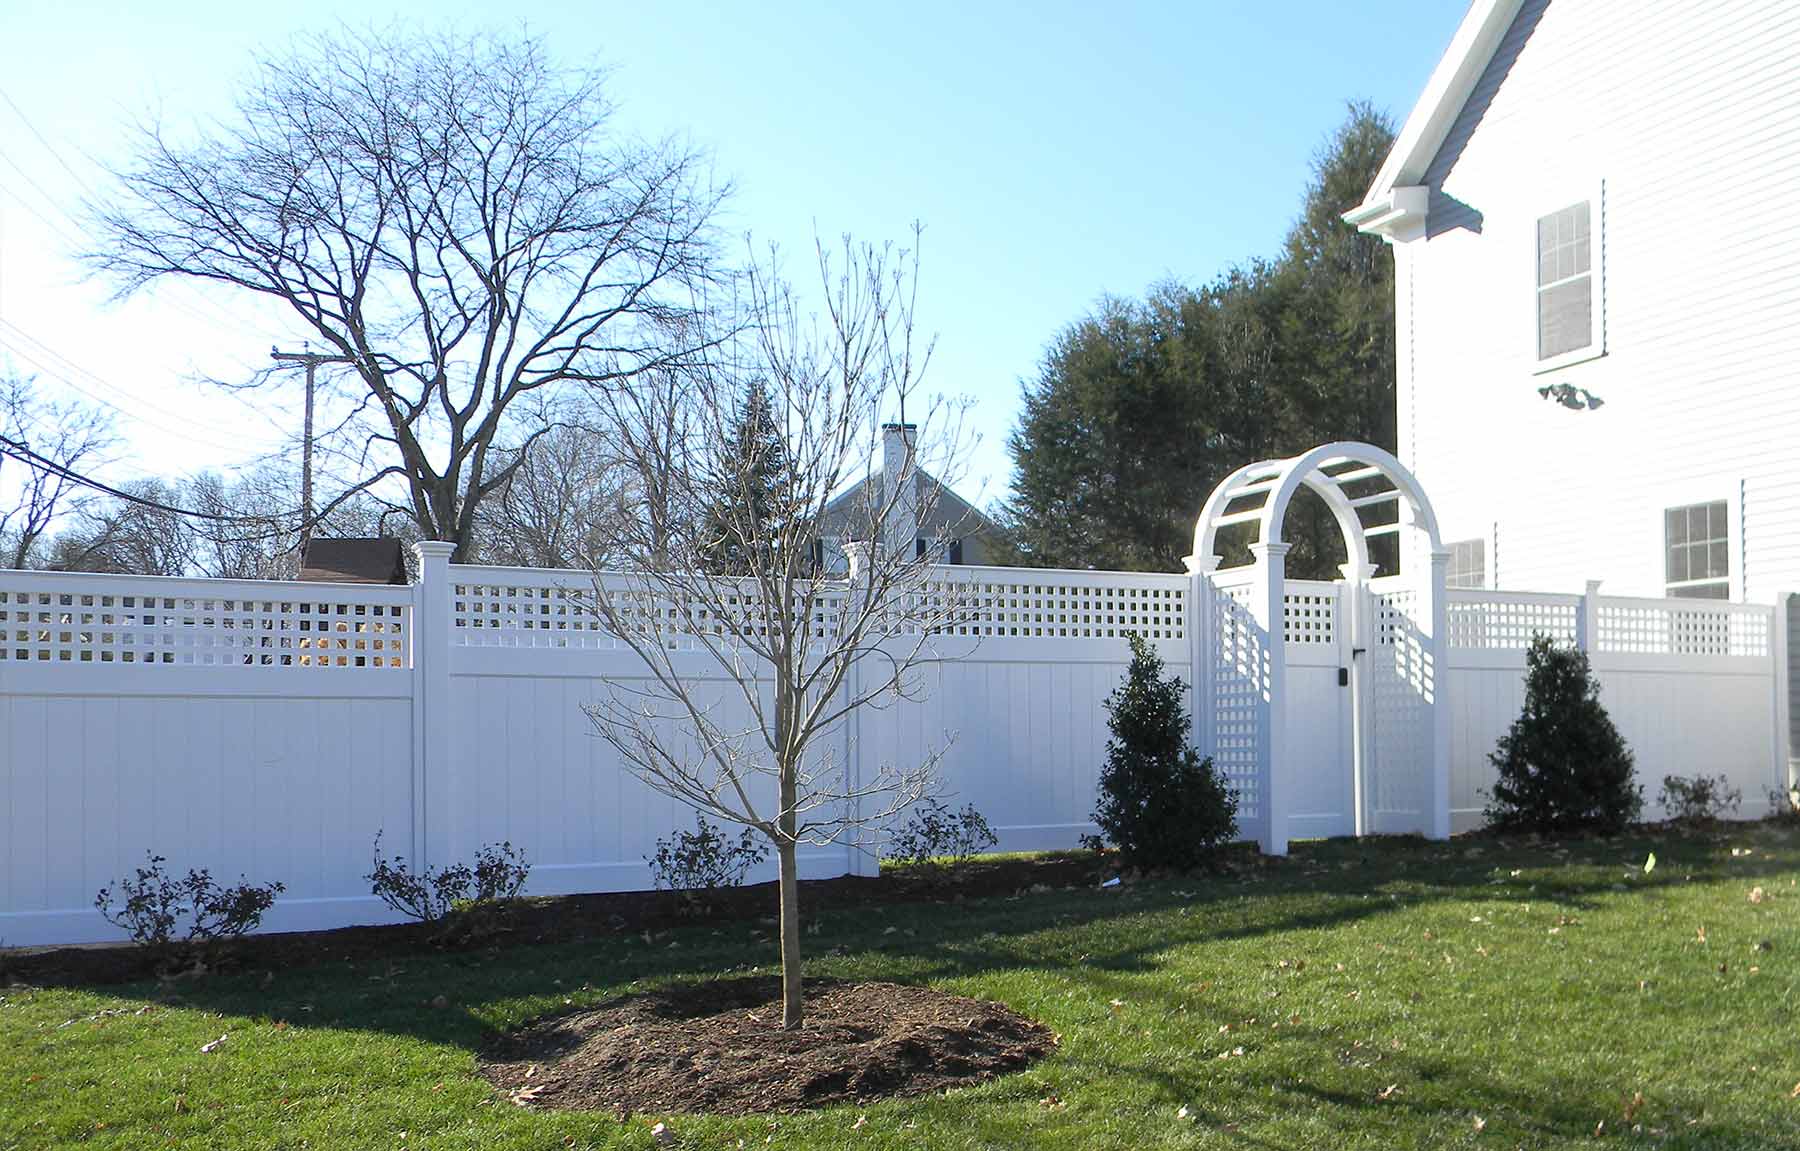 Fence Installation in Walpole, Massachusetts - Bottom 4